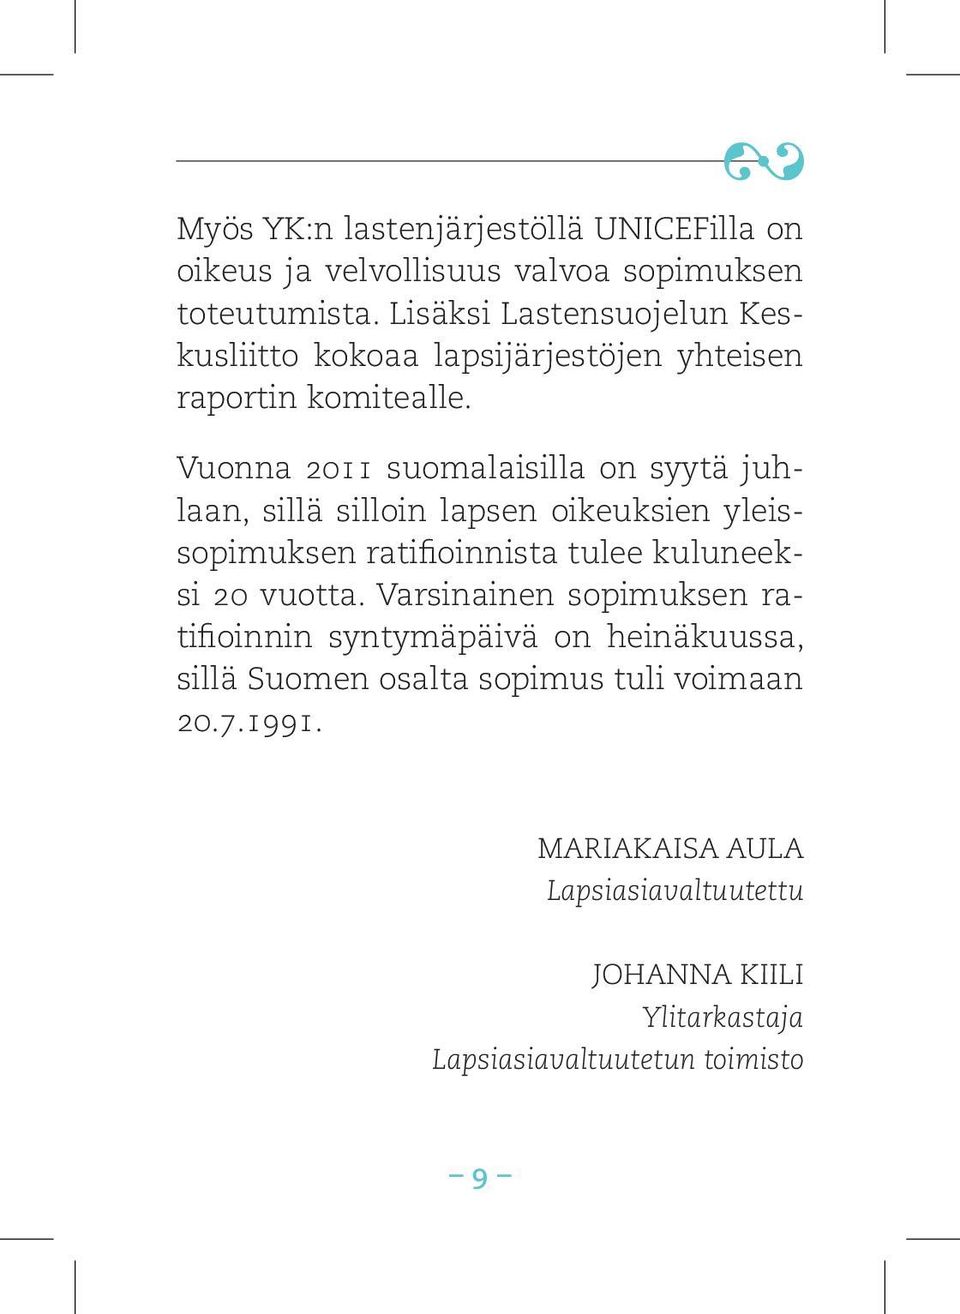 Vuonna 2011 suomalaisilla on syytä juhlaan, sillä silloin lapsen oikeuksien yleissopimuksen ratifioinnista tulee kuluneeksi 20 vuotta.